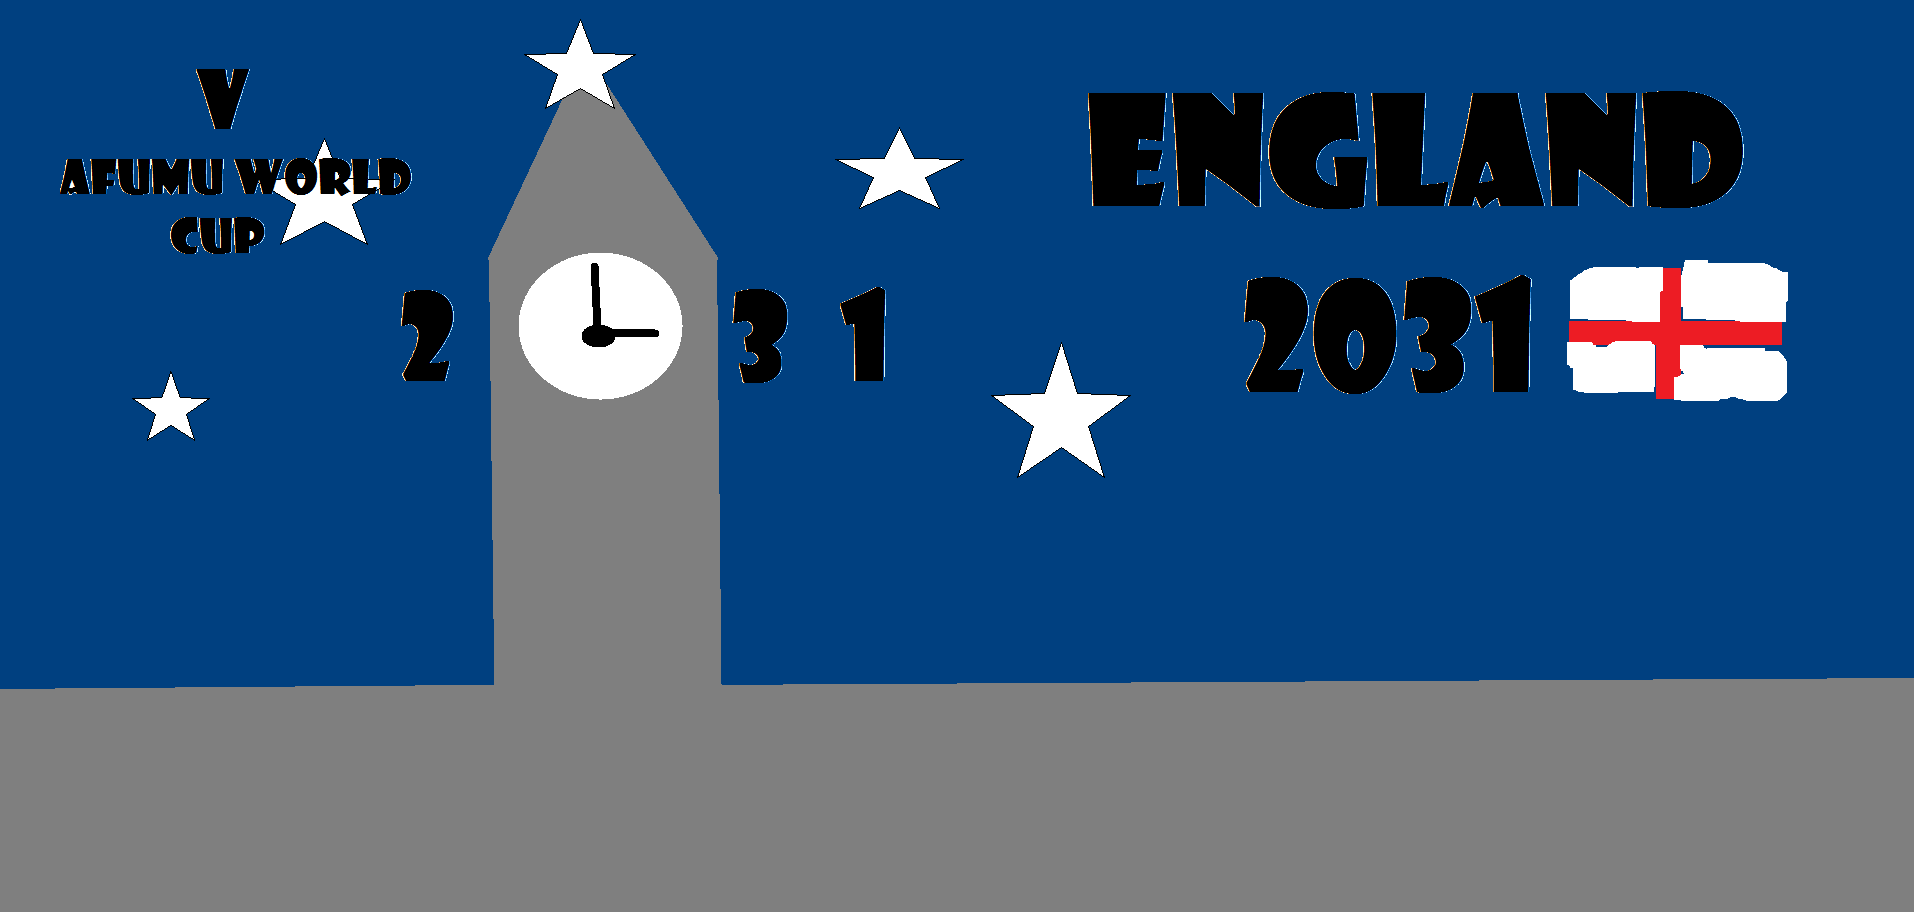 logo de V Afumu World Cup England 2031